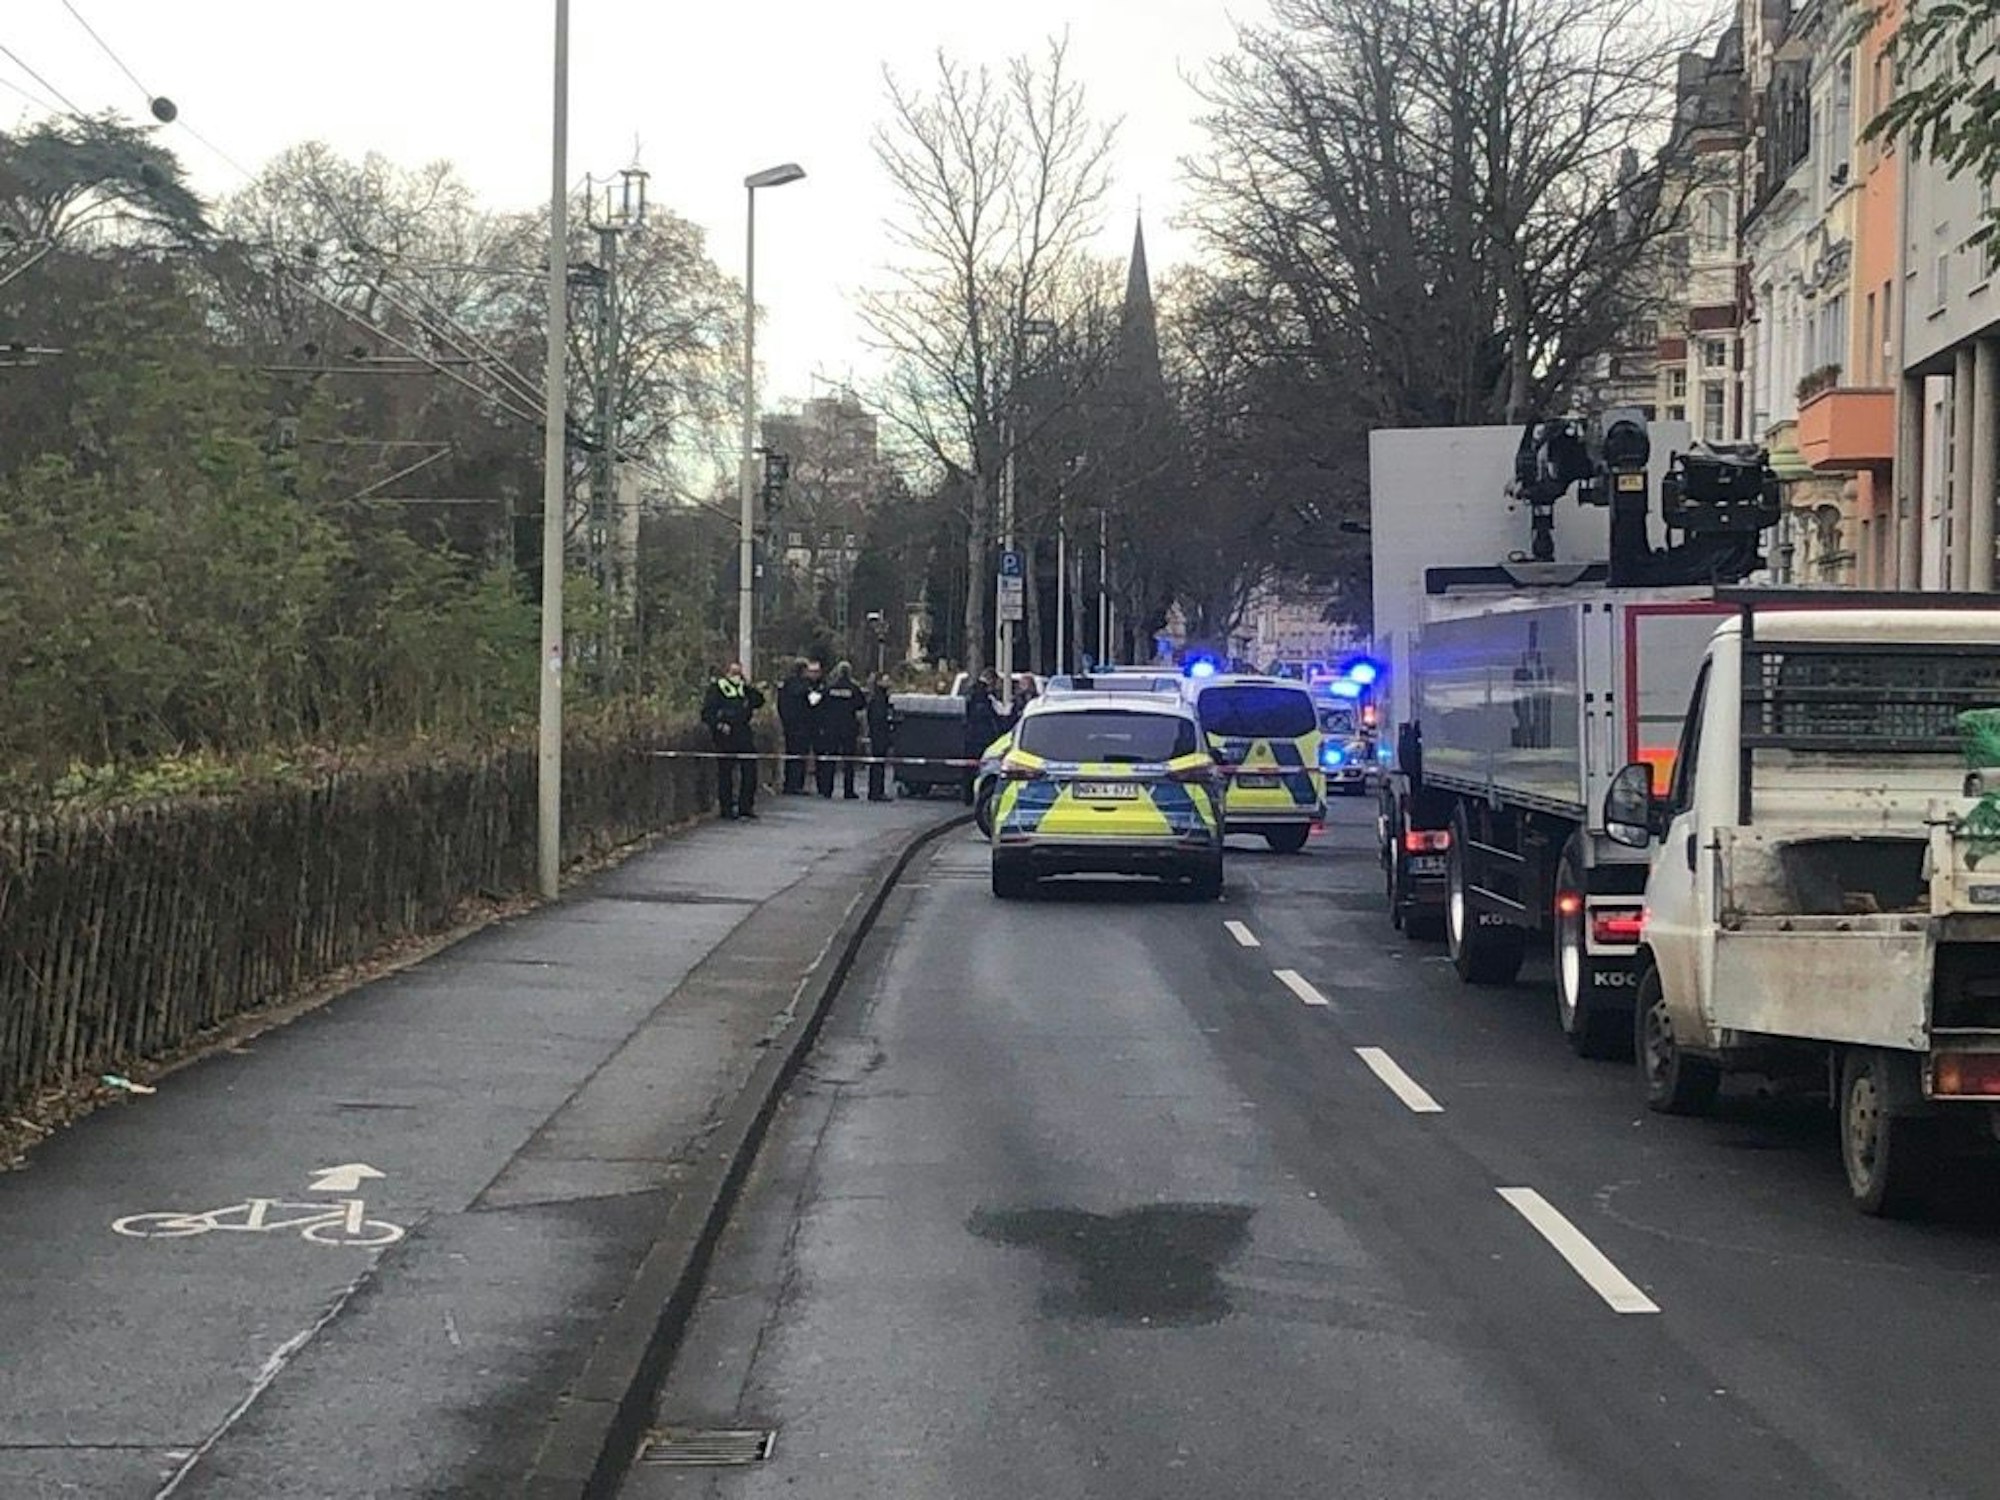 Gefahrenlage in Bonn: Polizist gibt Schuss ab